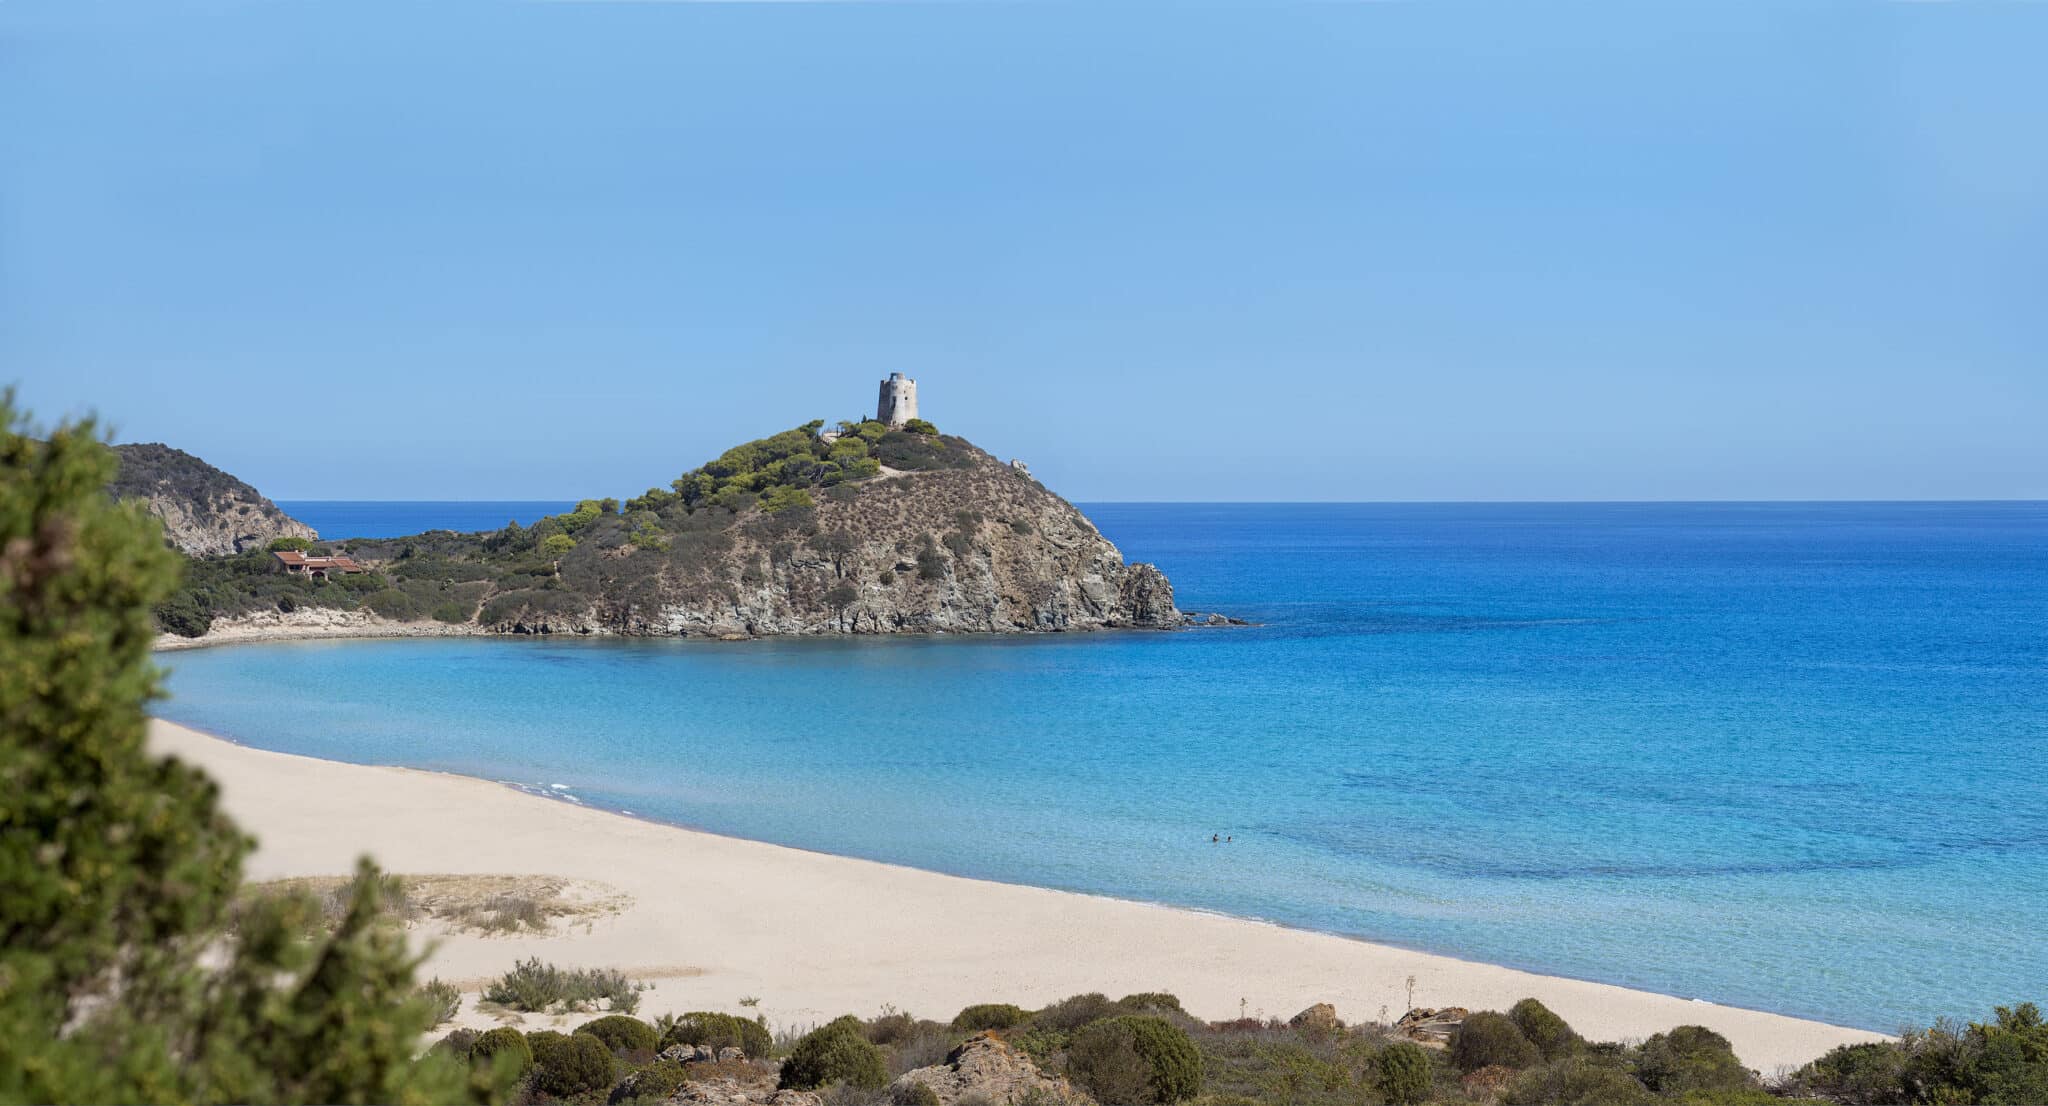 Курорт розташований у мальовничому куточку Кіа на південному заході Сардинії. Узбережжя Кіа – унікальне місце, яке кілька років поспіль було відзначене Five Blue Sails від асоціації Legambiente за чистоту моря та пляжу.